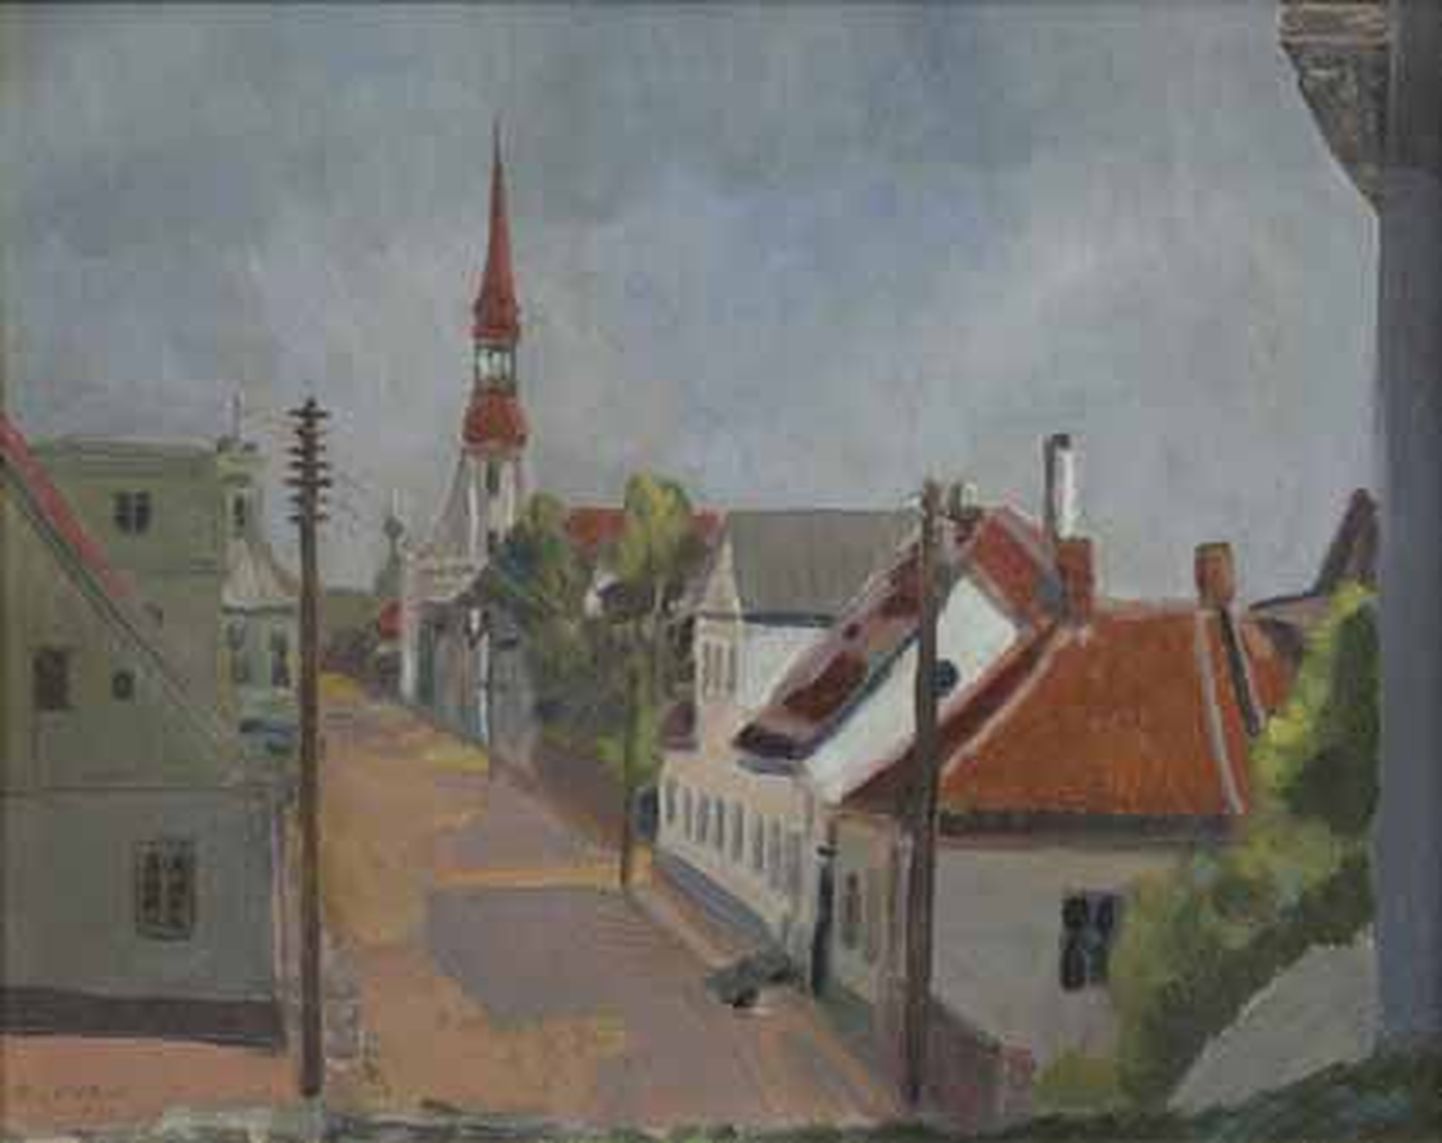 Internetis saab vaadata näitust "Pärnu eesti kunstis".